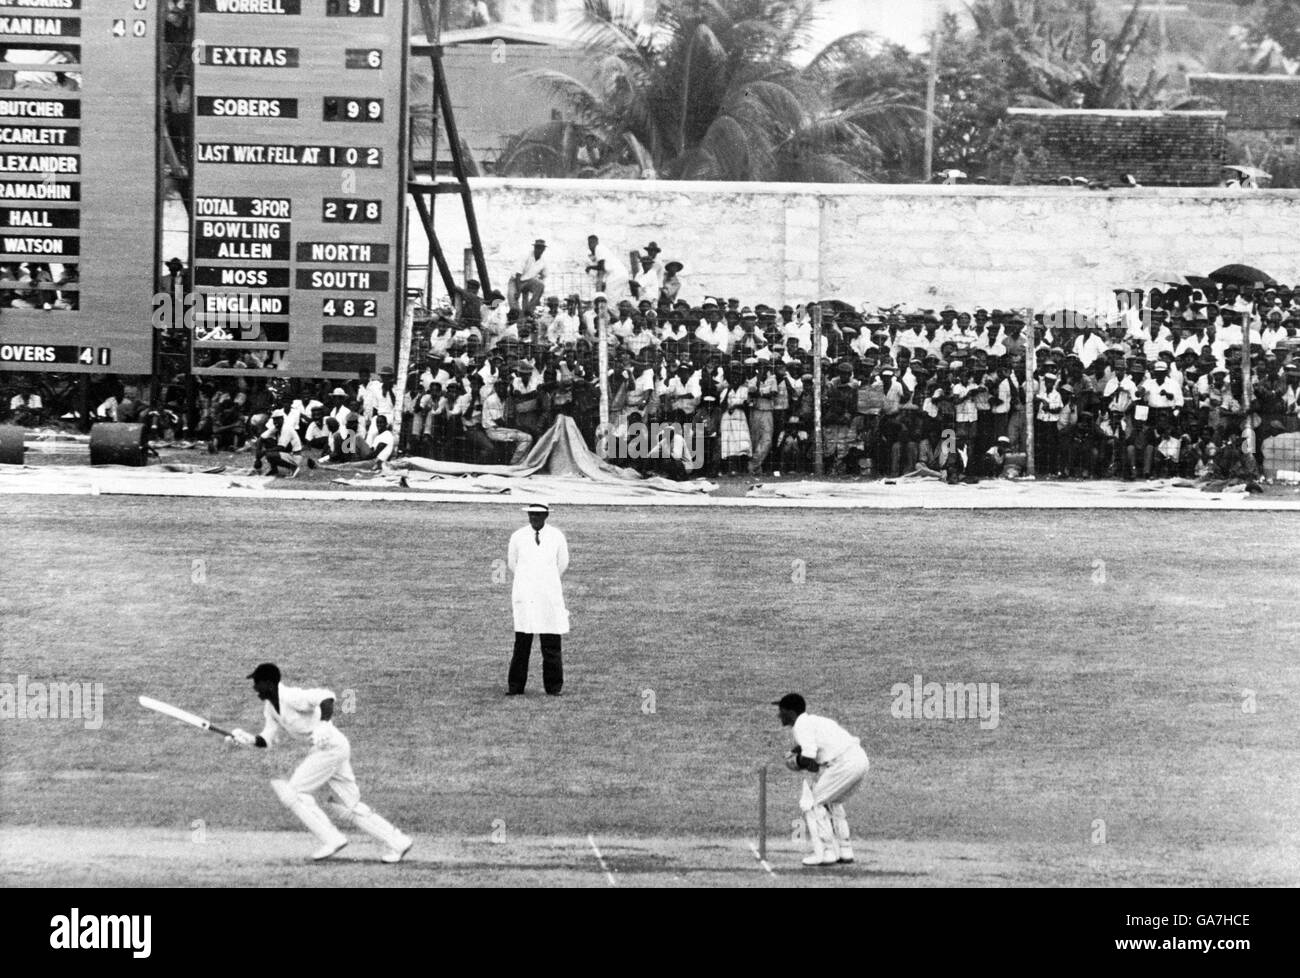 Garfield Sobers (l) de West Indies prend un seul de l' dernière balle du jour pour terminer son siècle Banque D'Images